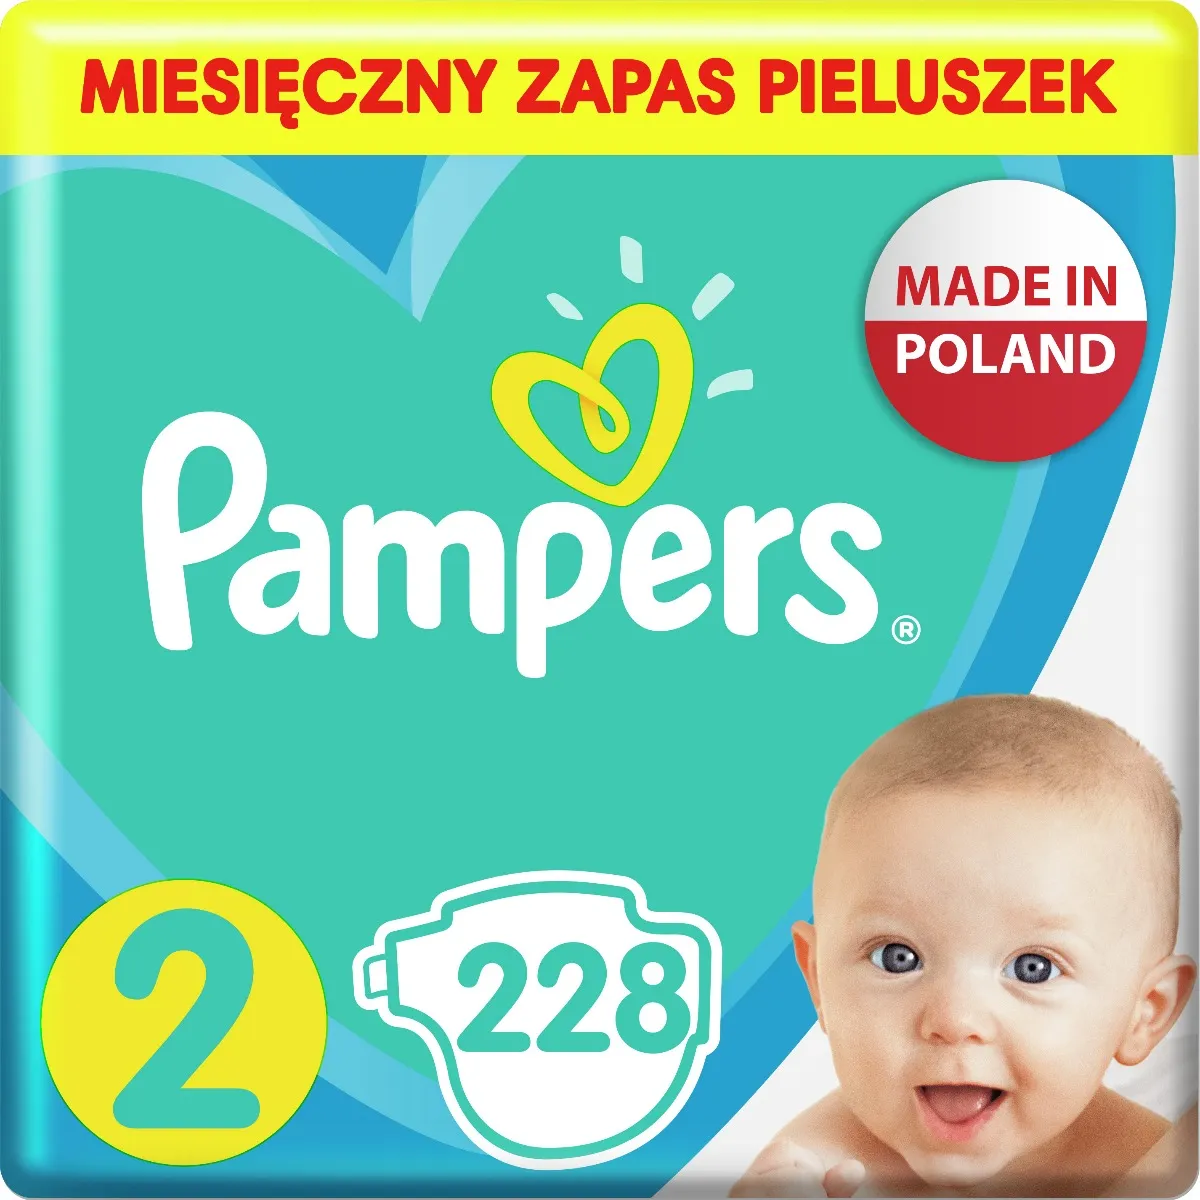 pampers premium care newborn 26